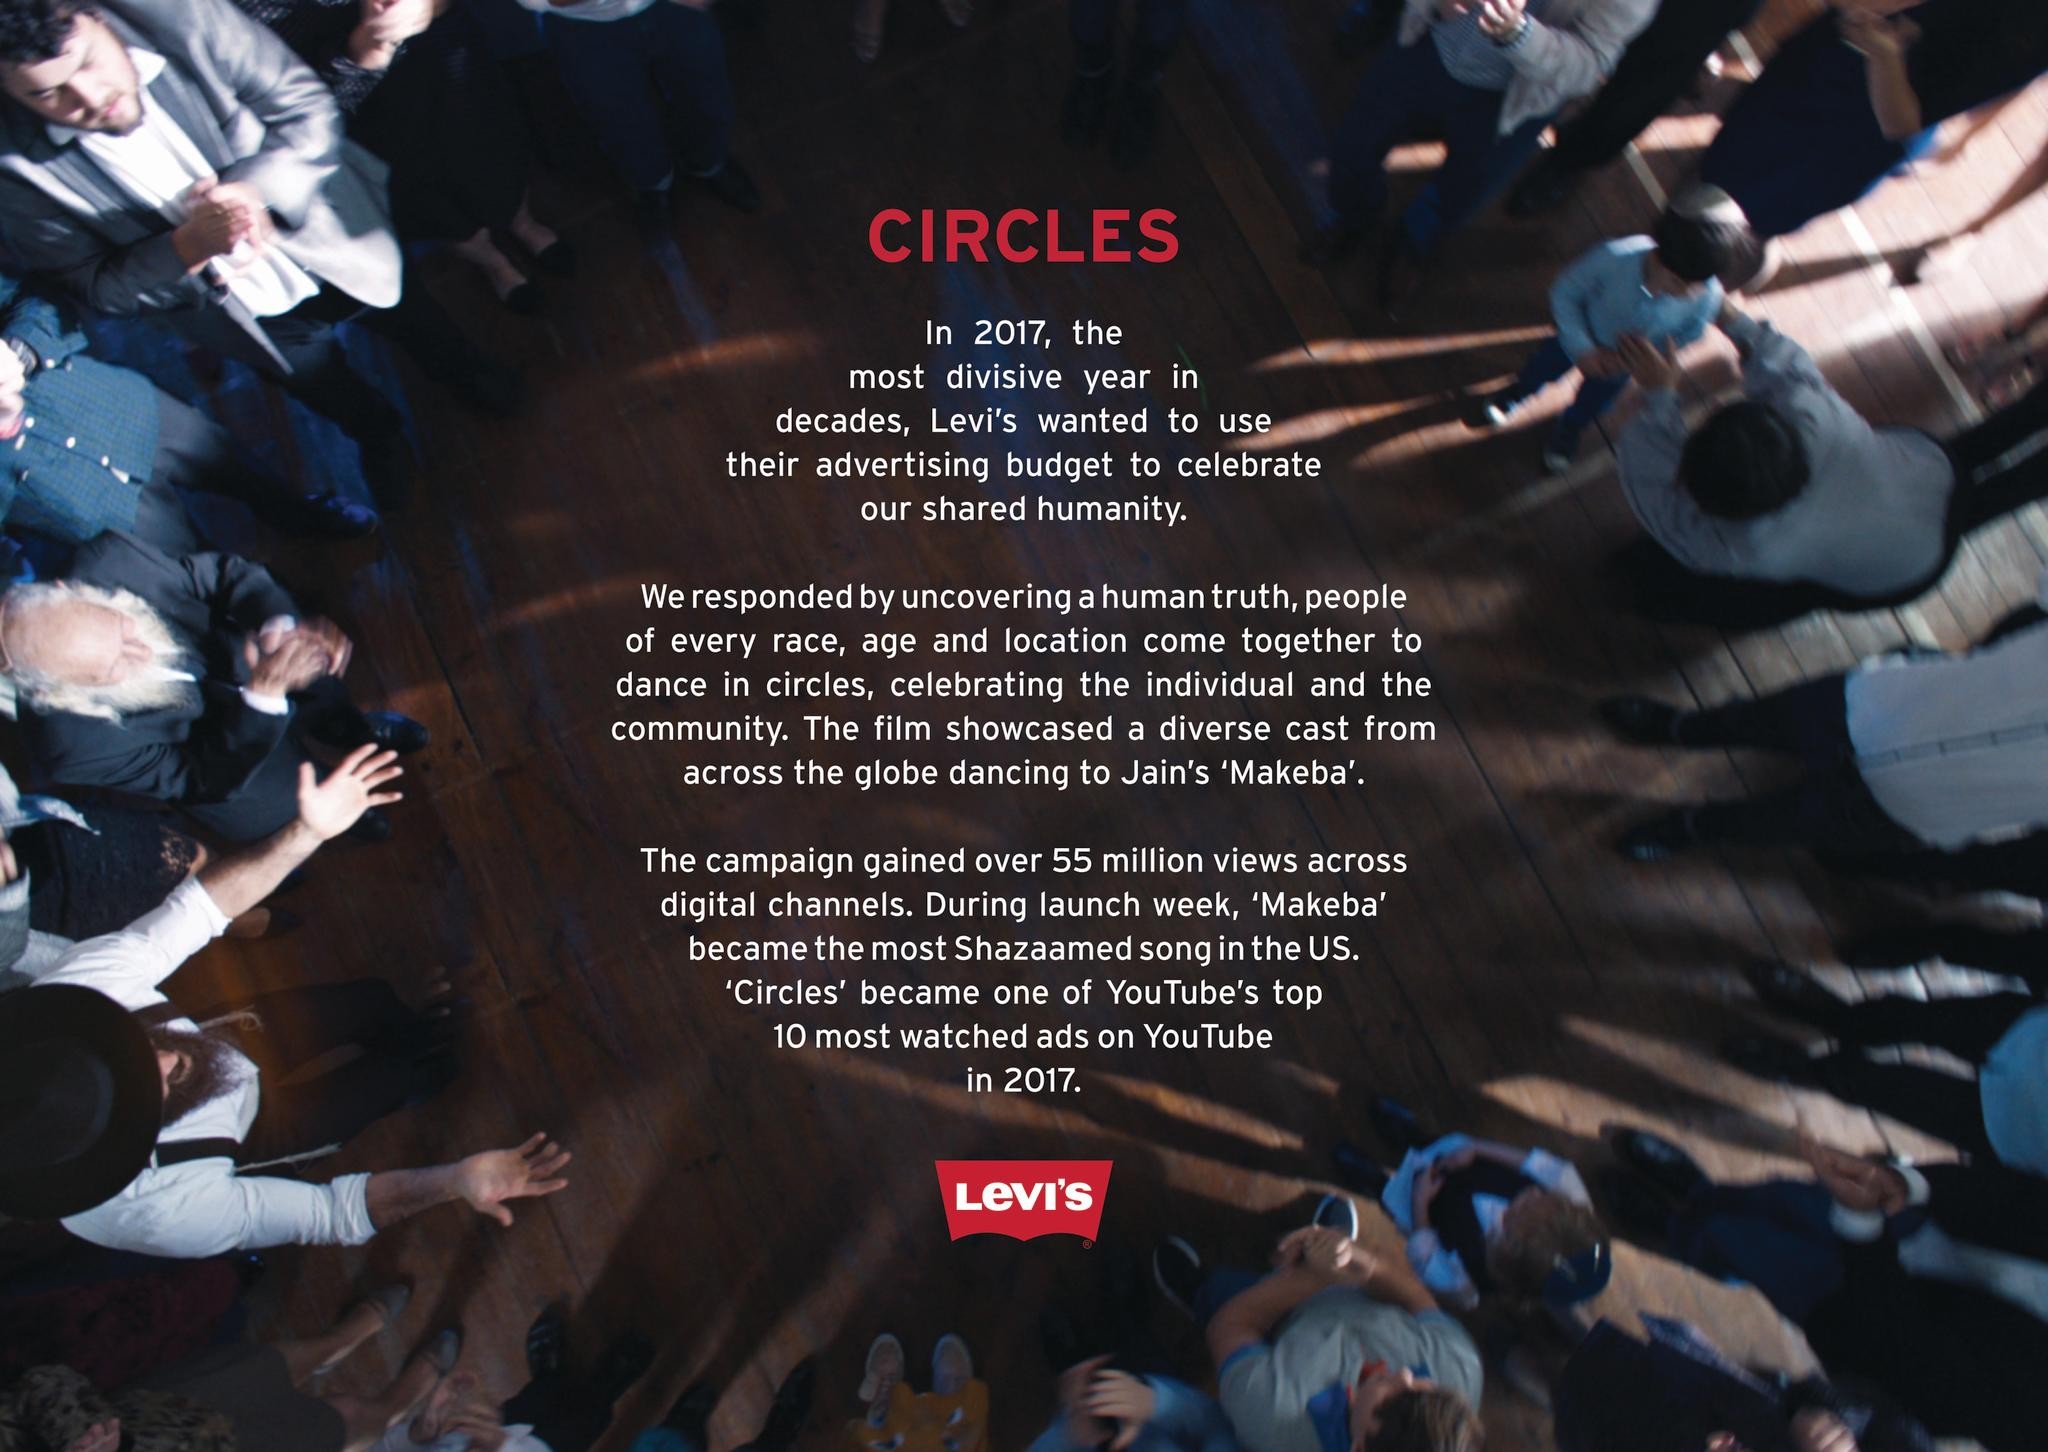 Levi's Circles